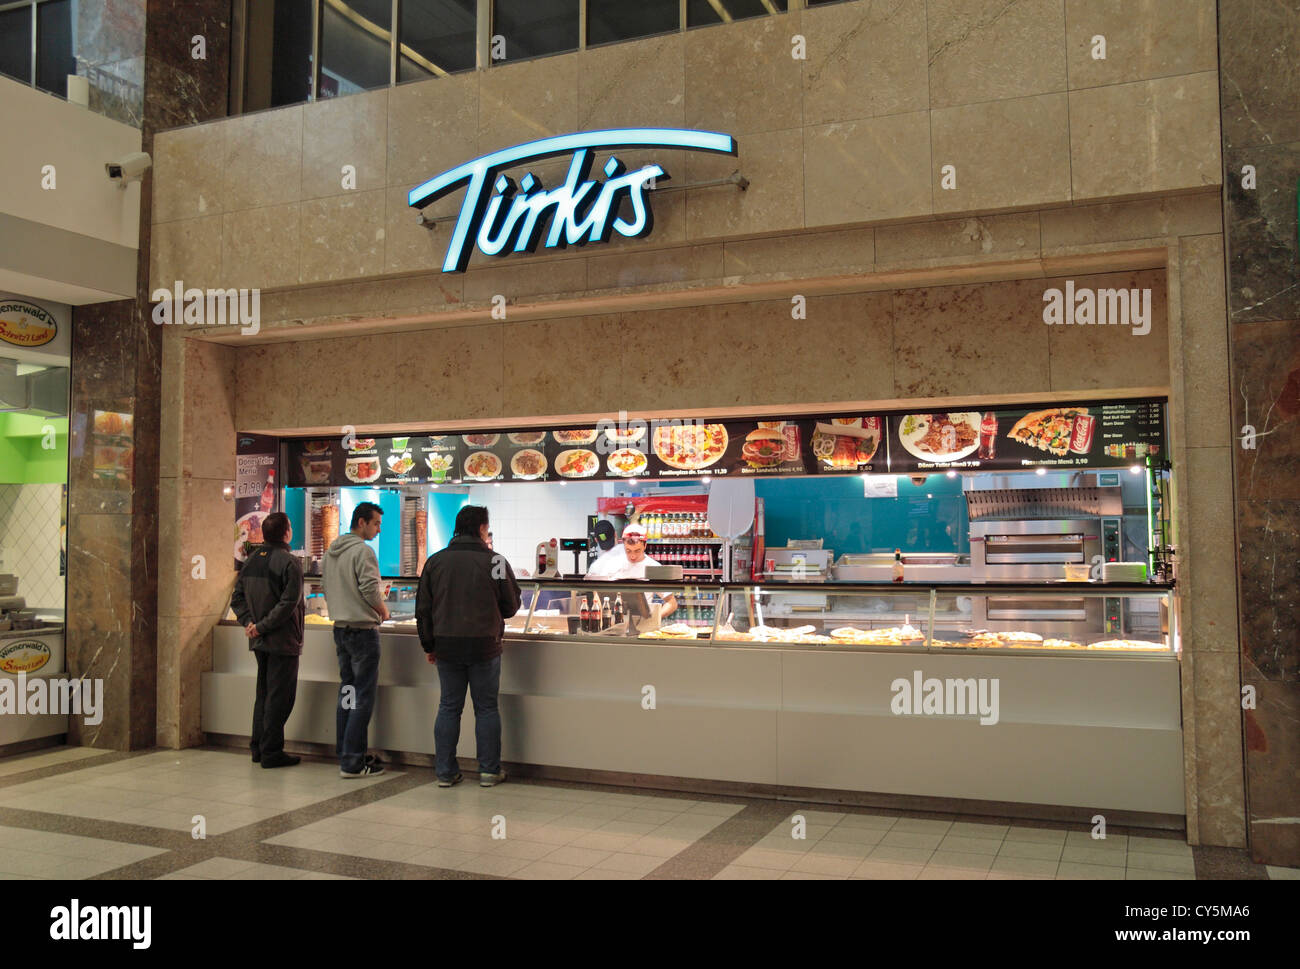 Un fast food Türkis boutique dans le Wien Westbahnhof (gare de l'ouest de Vienne) Vienne, Autriche. Banque D'Images